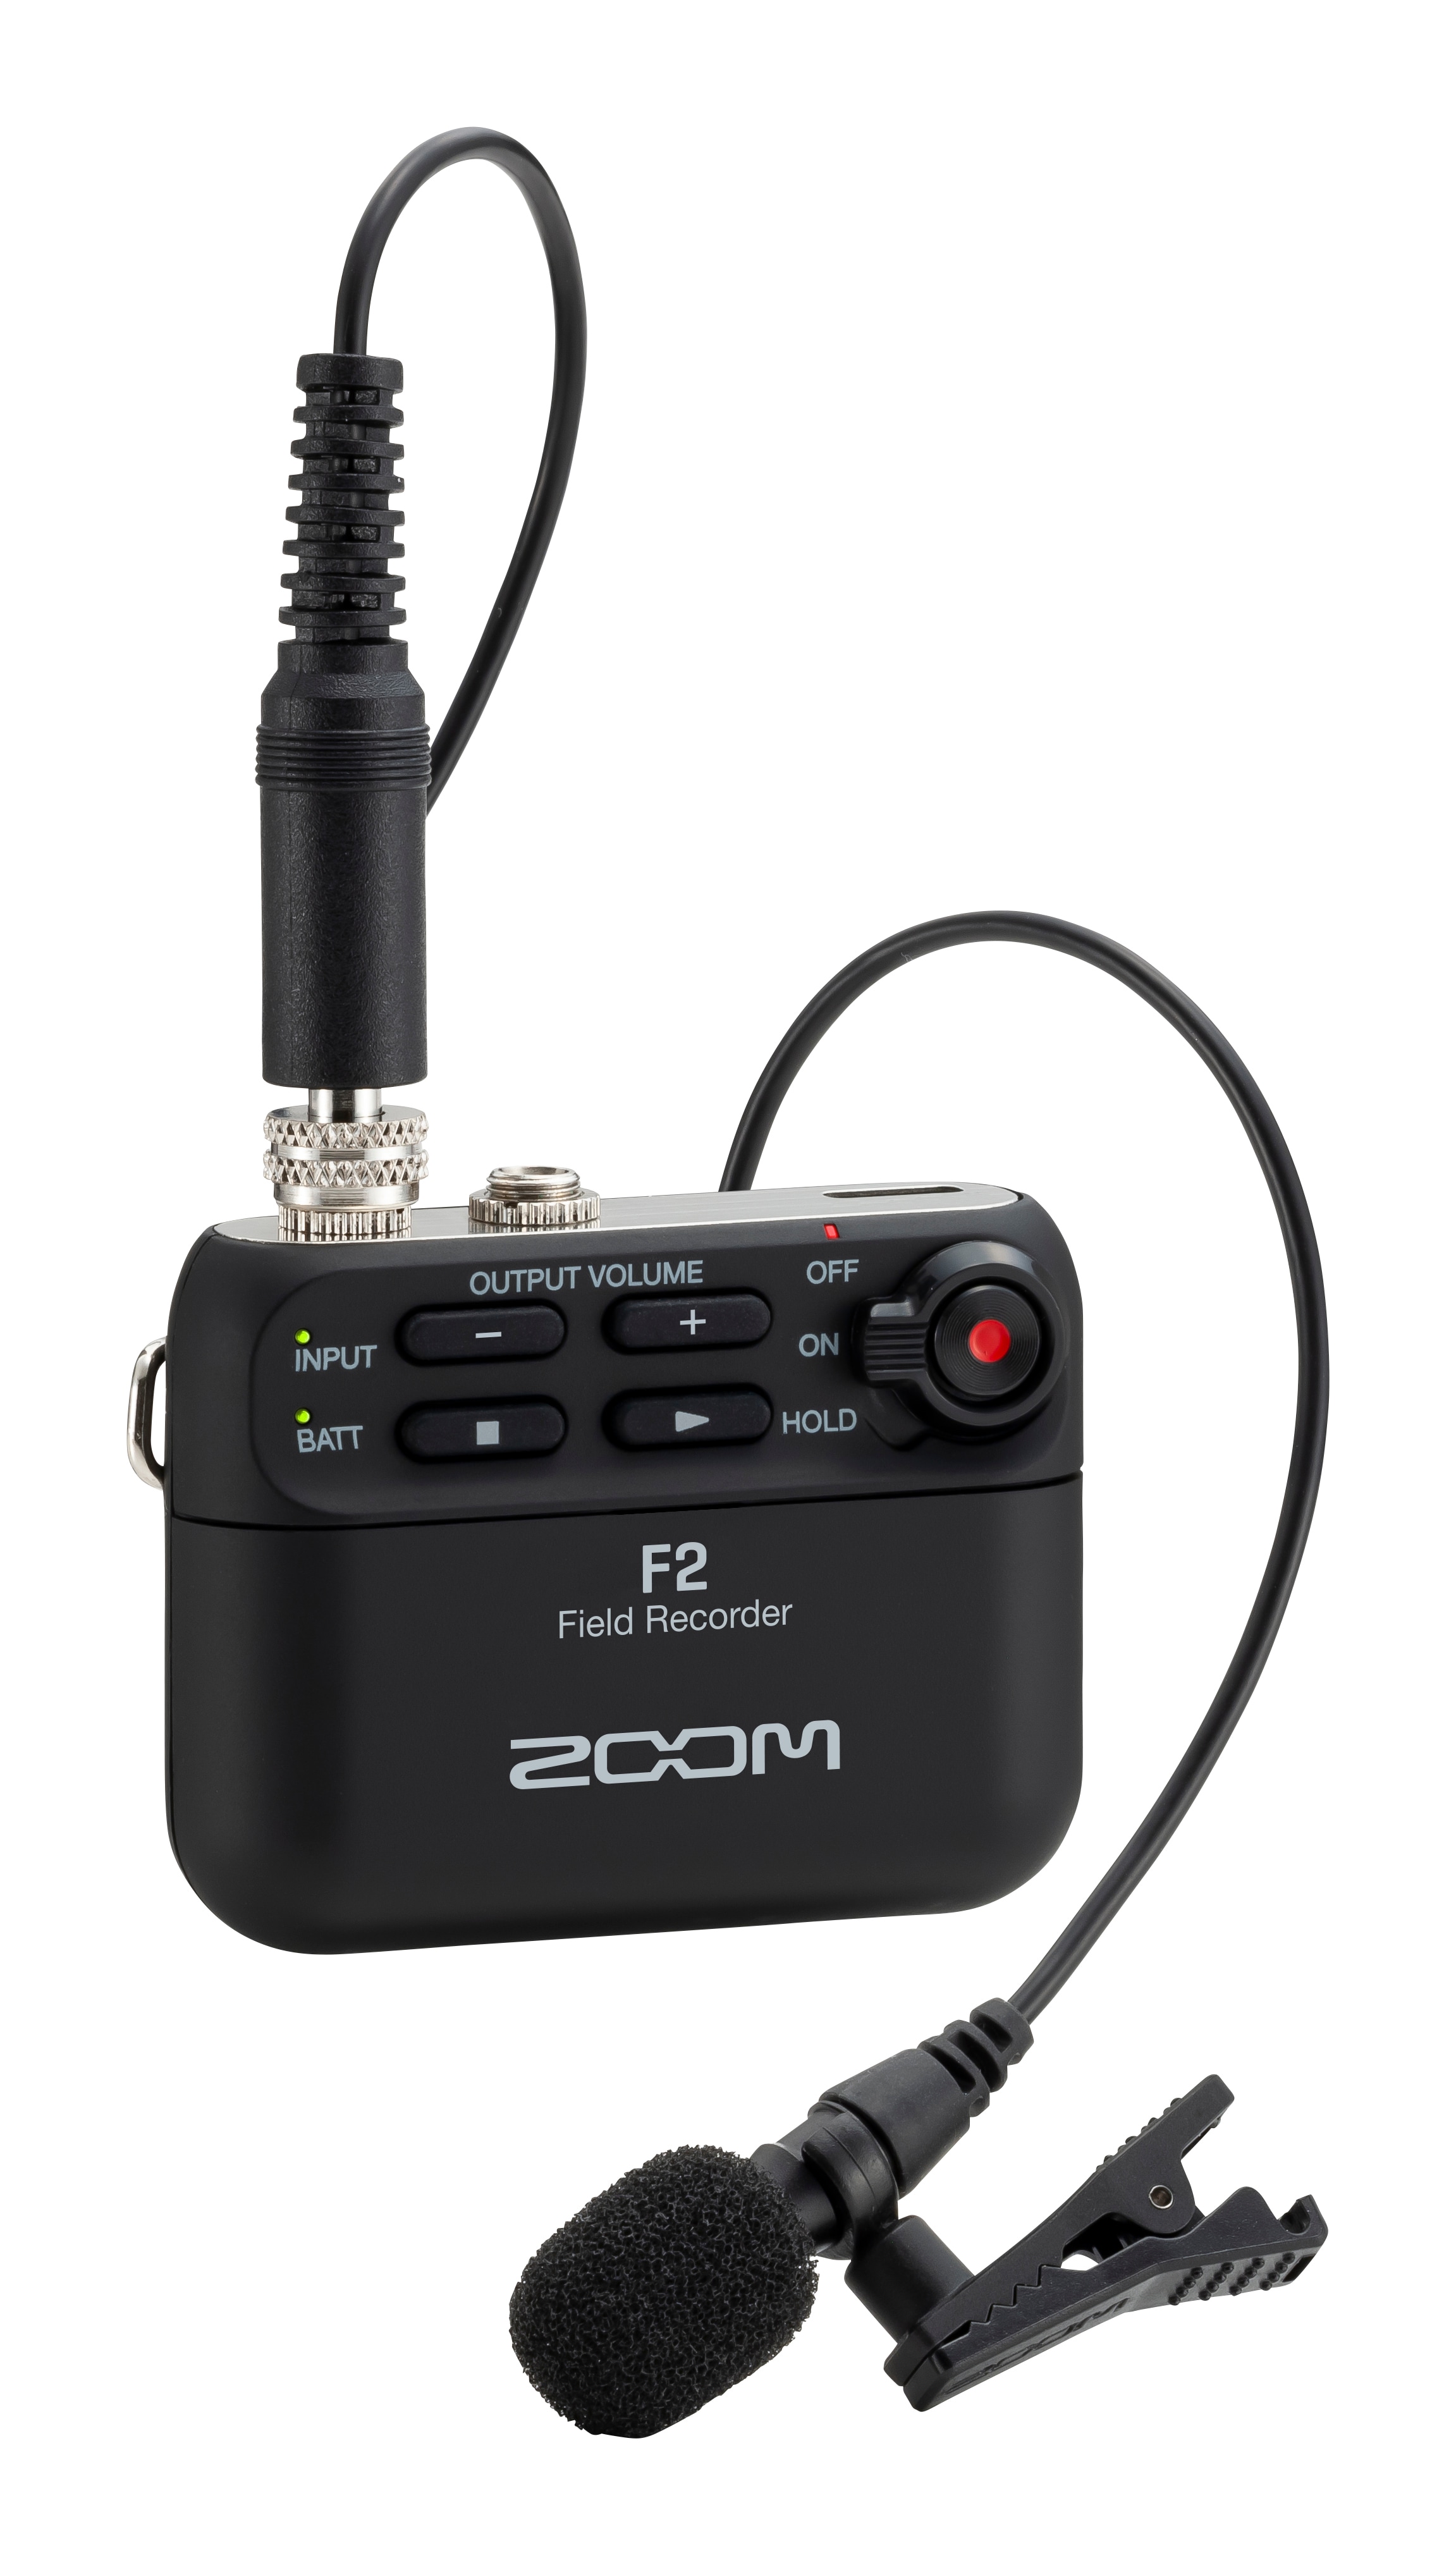 Zoom F2 Ultrakompact Field Recorder